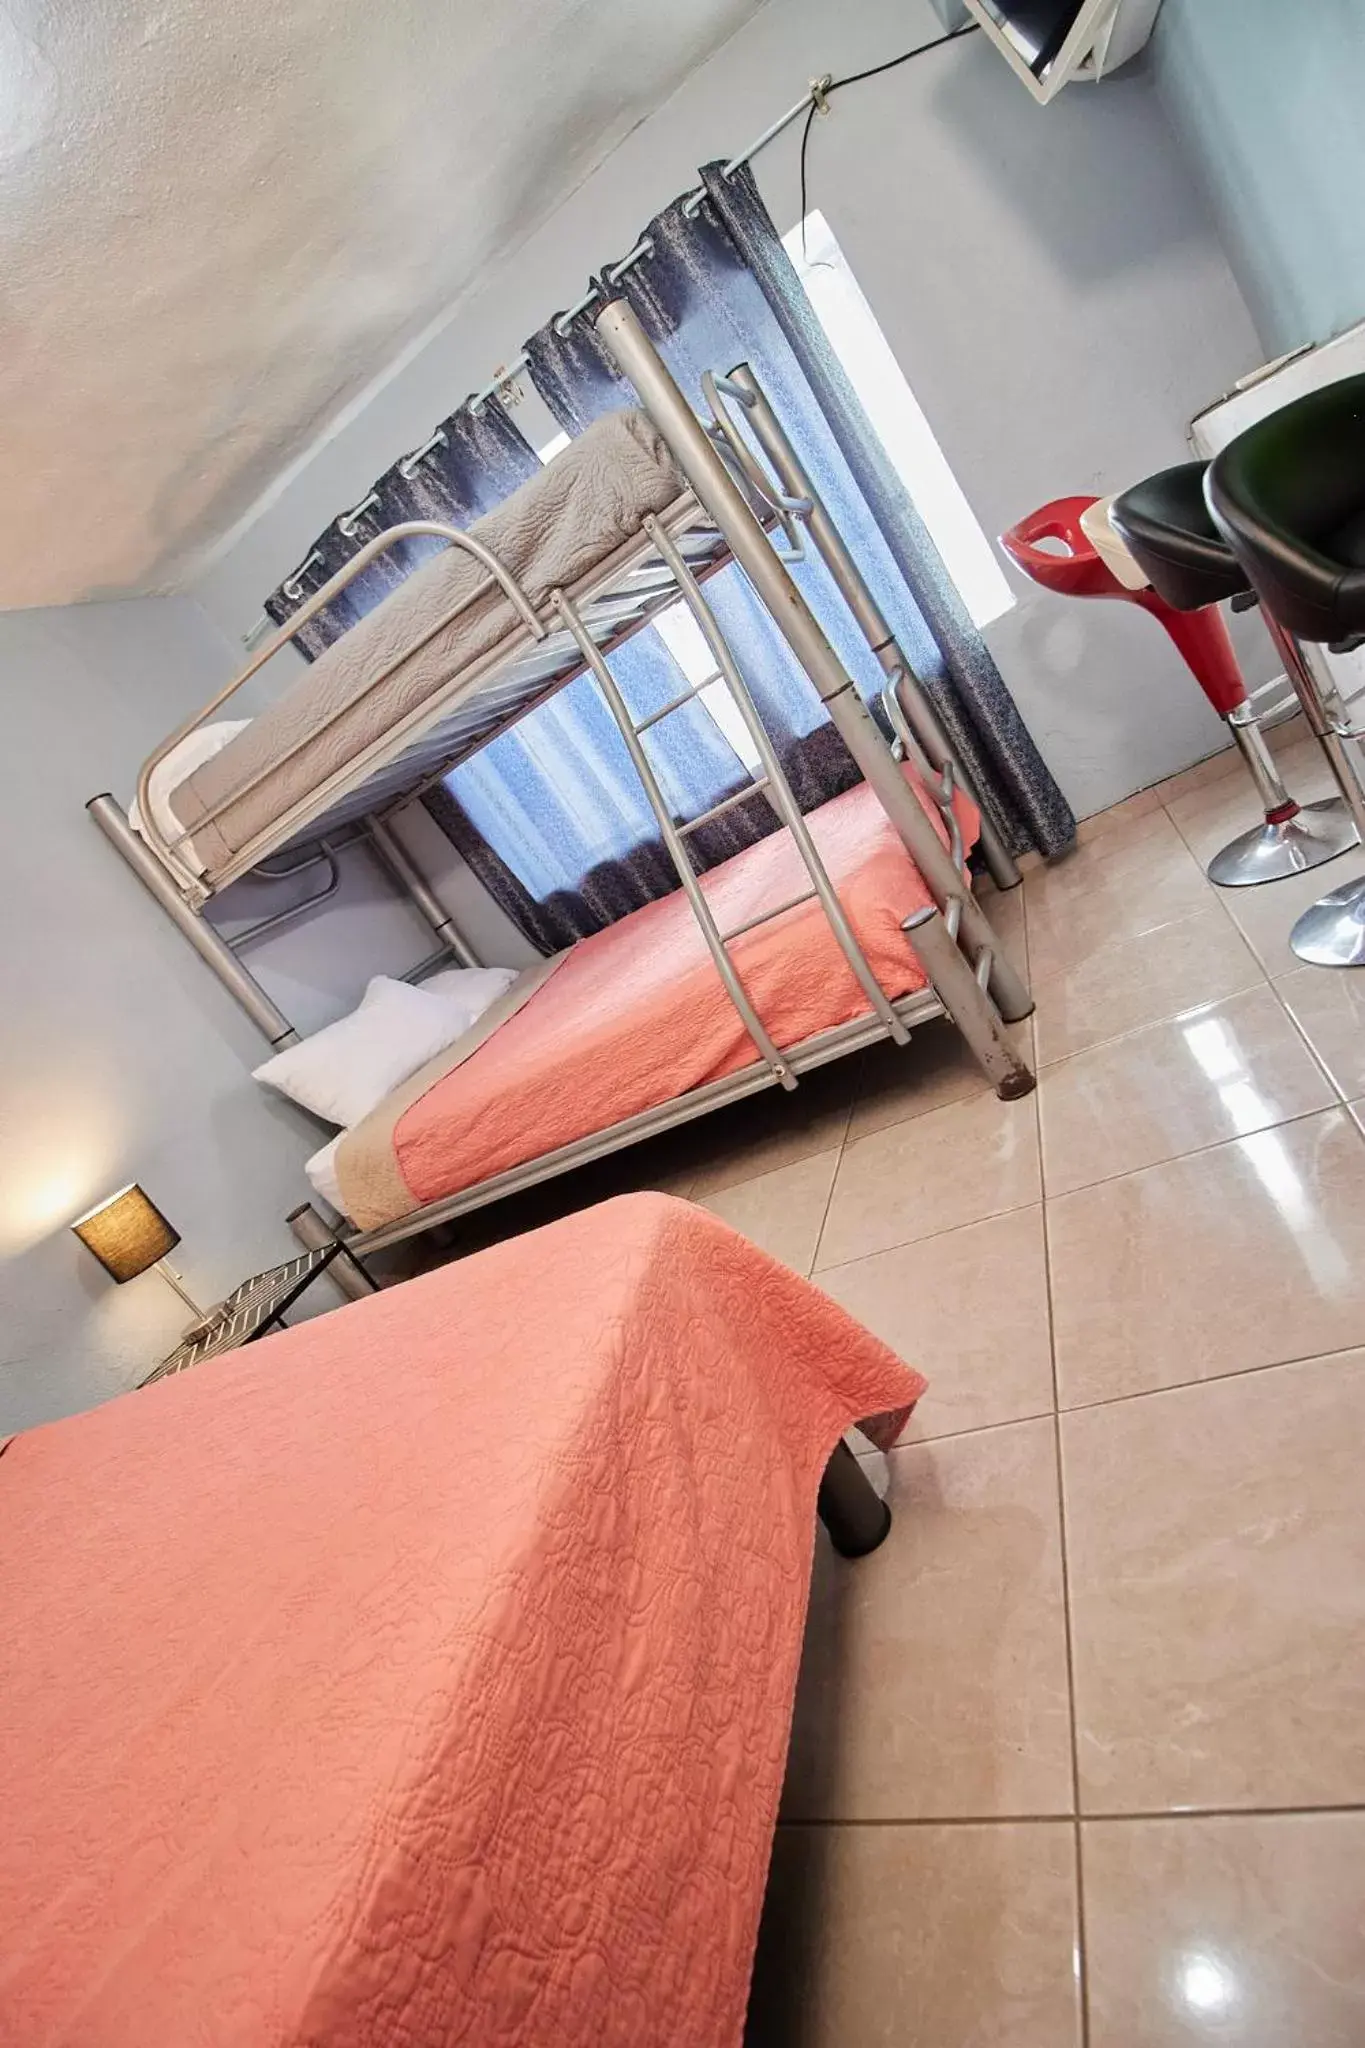 Bunk Bed in Hotel Casa Ceci Inn